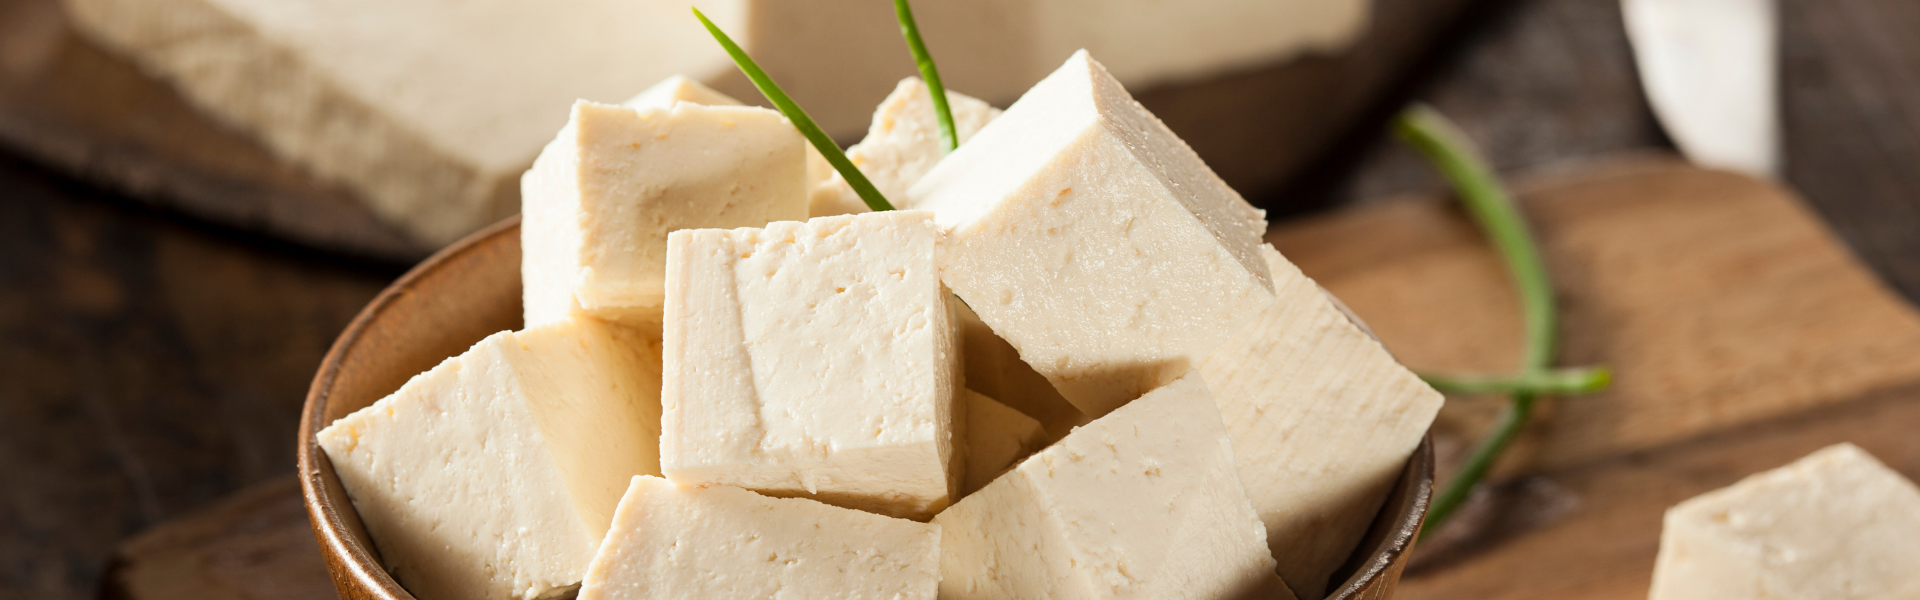 Oficina gratuita de culinária japonesa ensina a preparar tofu. Inscreva-se!